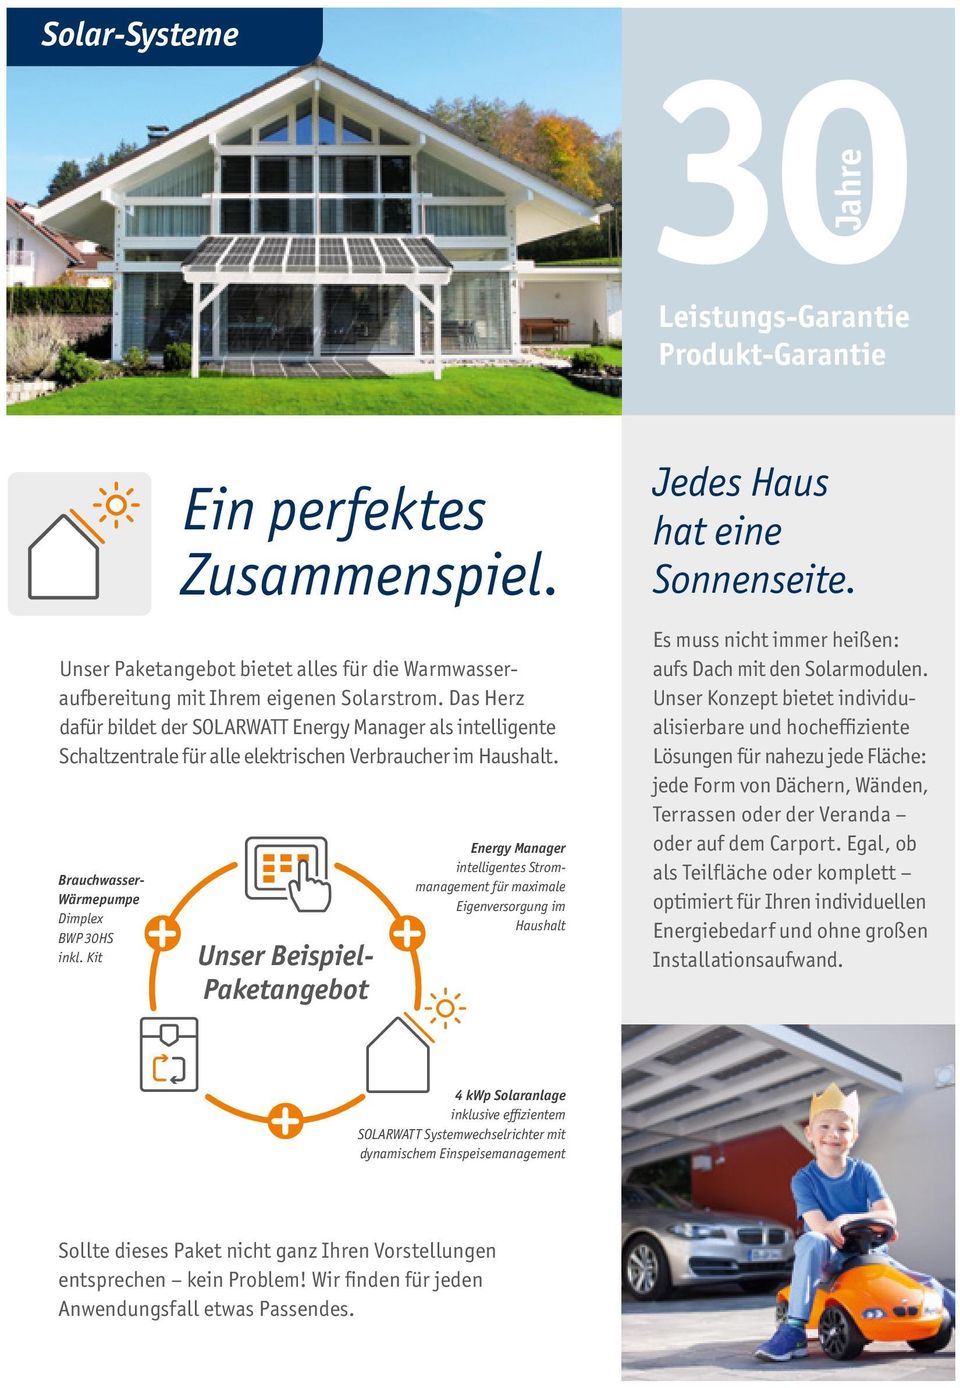 Kit Unser Beispiel- Paketangebot Energy Manager intelligentes Strommanagement für maximale Eigenversorgung im Haushalt Jedes Haus hat eine Sonnenseite.